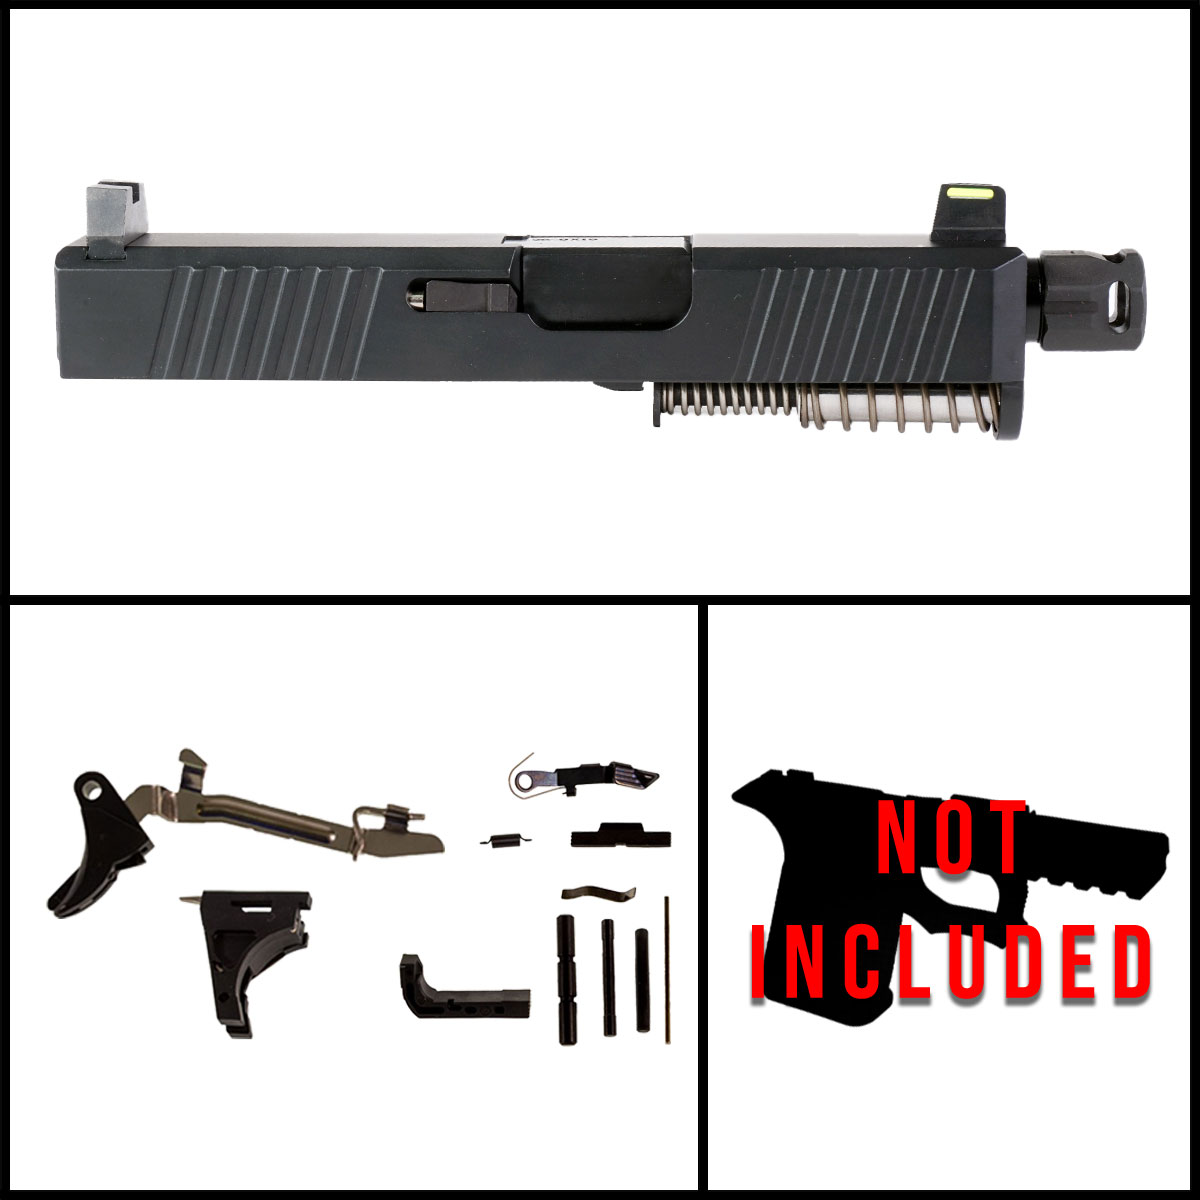 OTD 'Providence Power' 9mm Full Gun Kit - Glock 26 Gen 1-3 Compatible